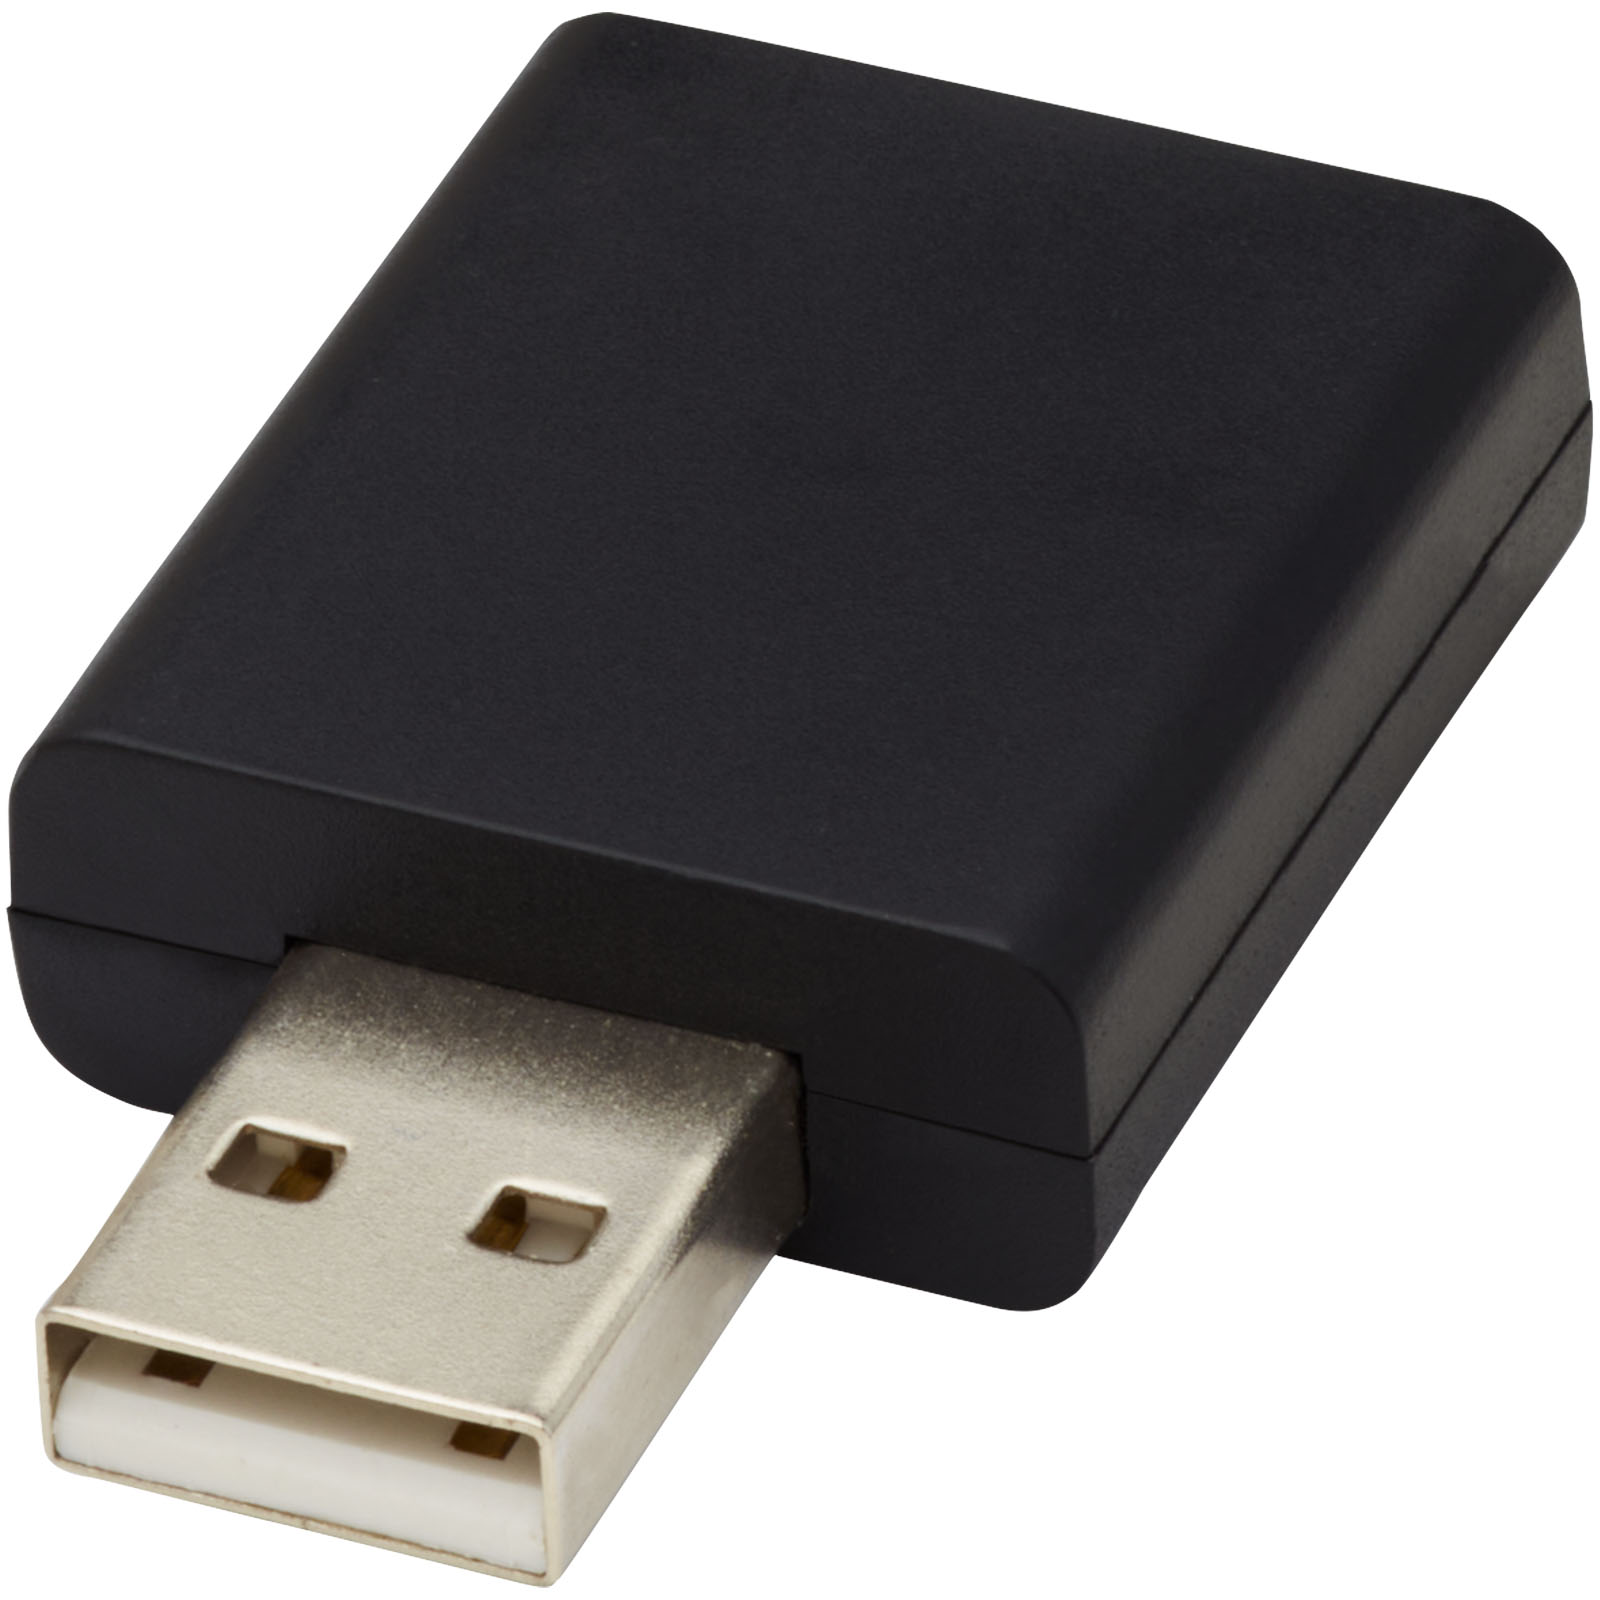 DataGuard USB - Little Clacton - Pilton